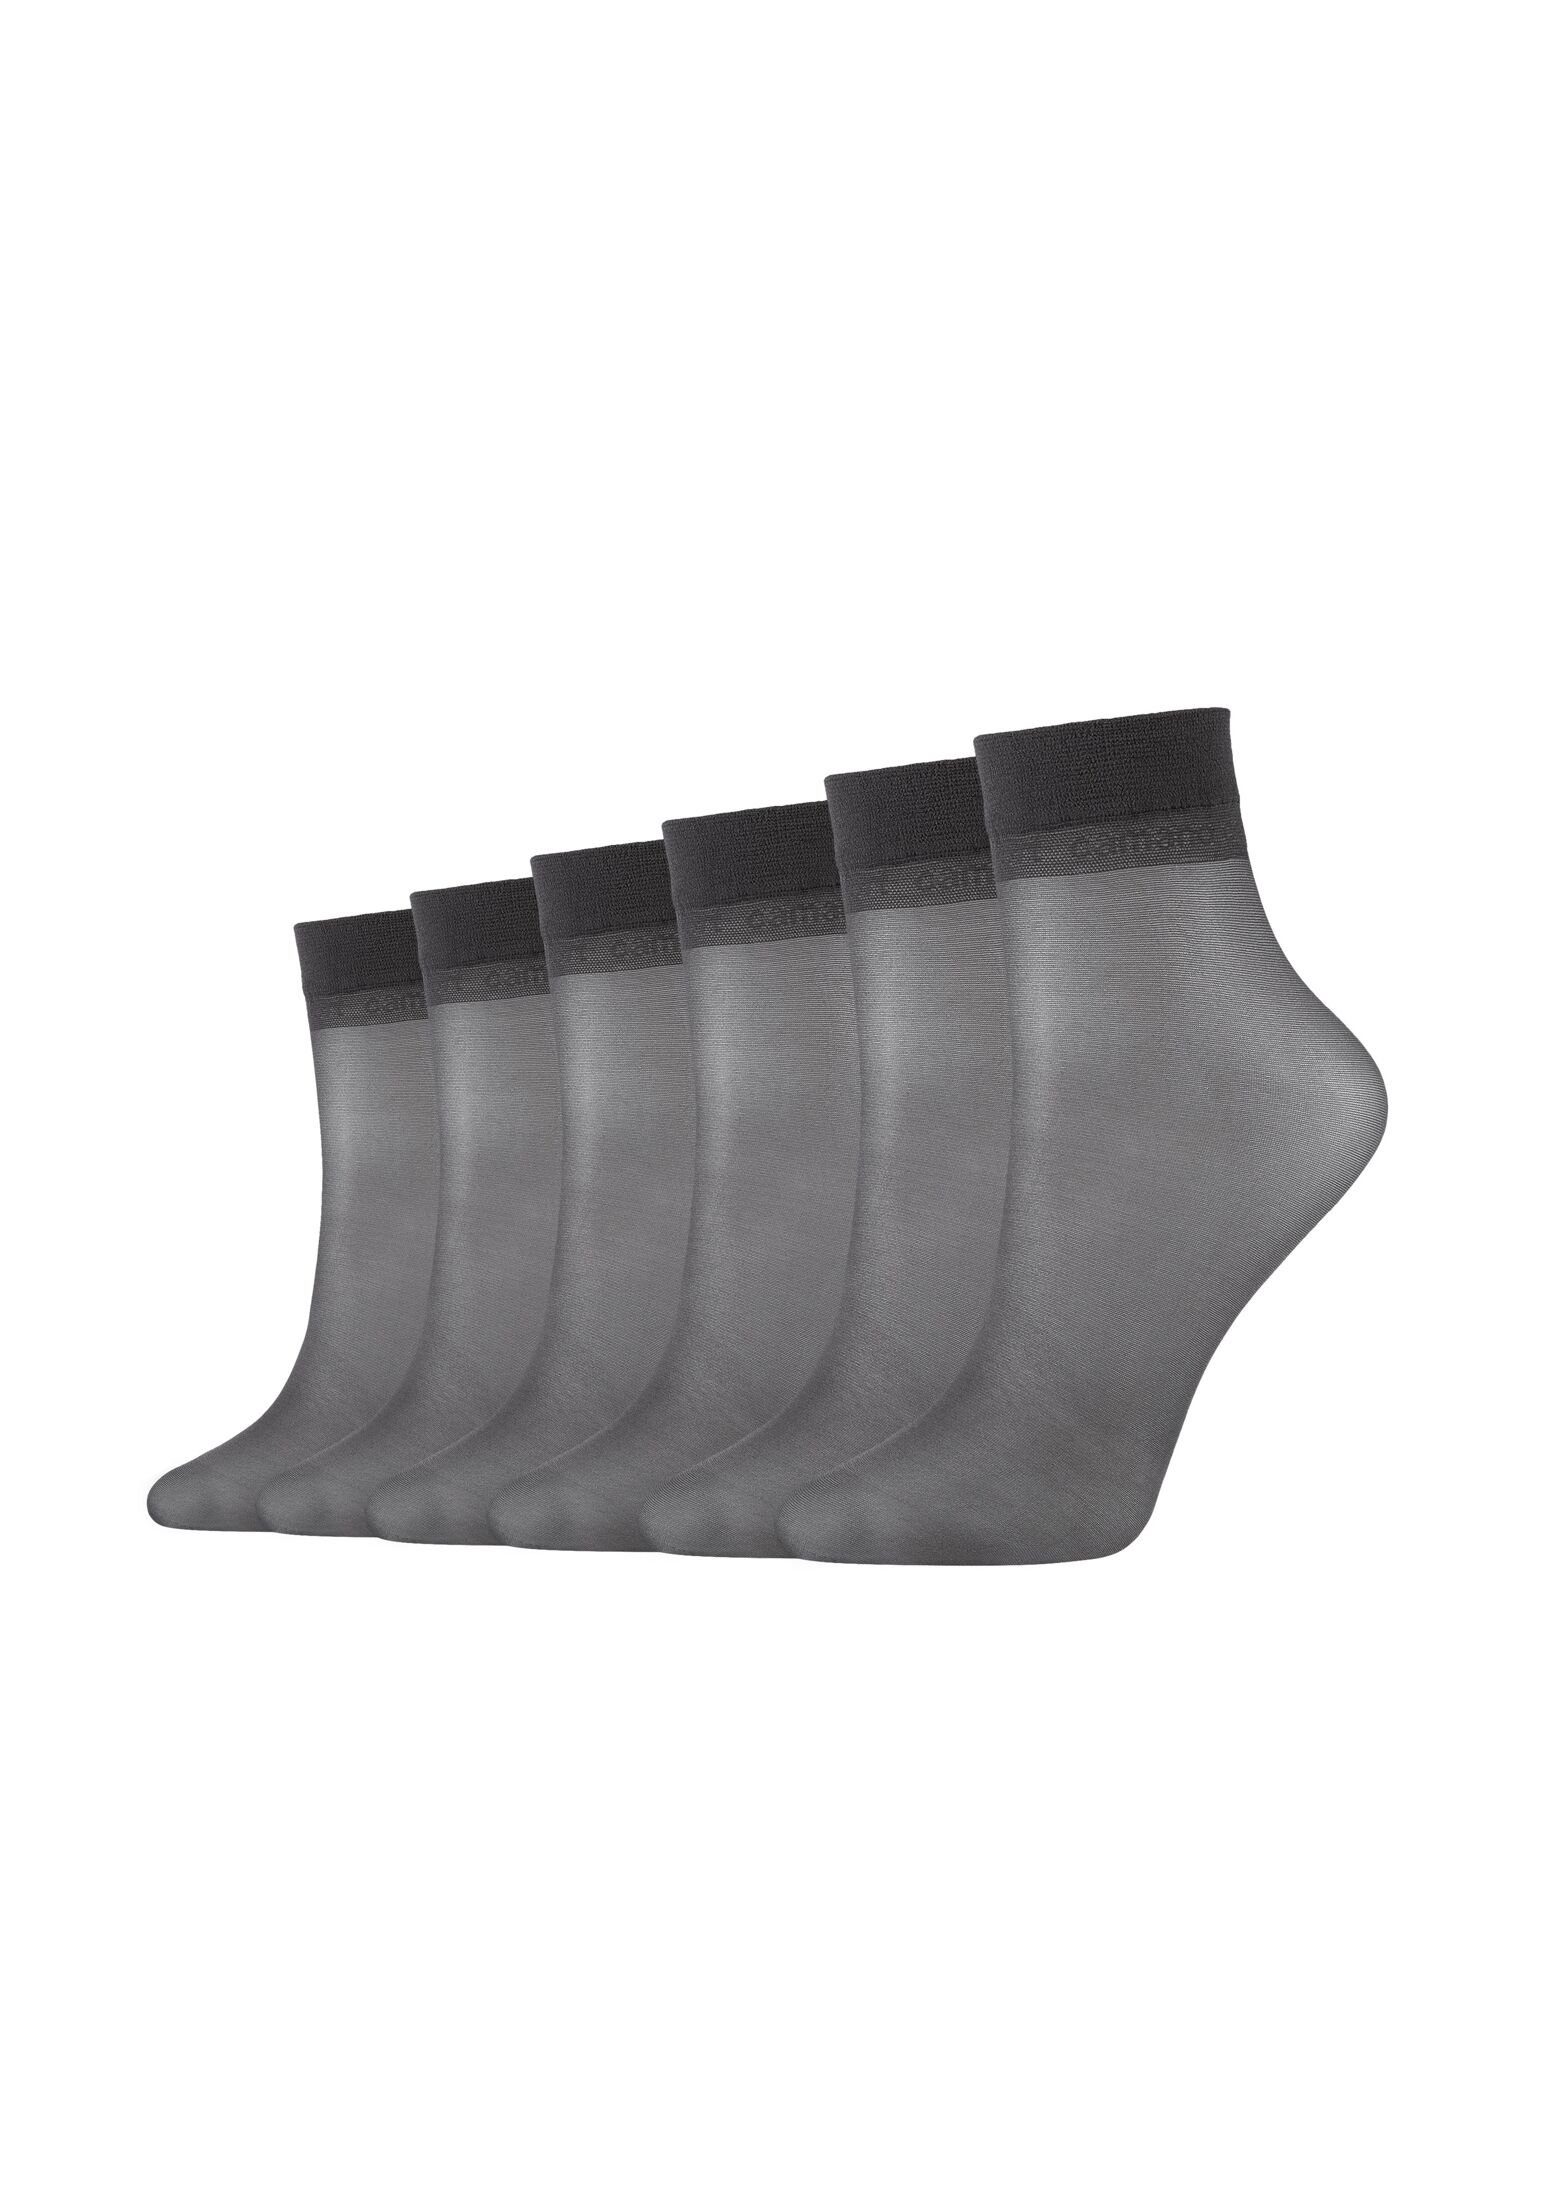 Camano Socken Socken 6er Pack anthracite